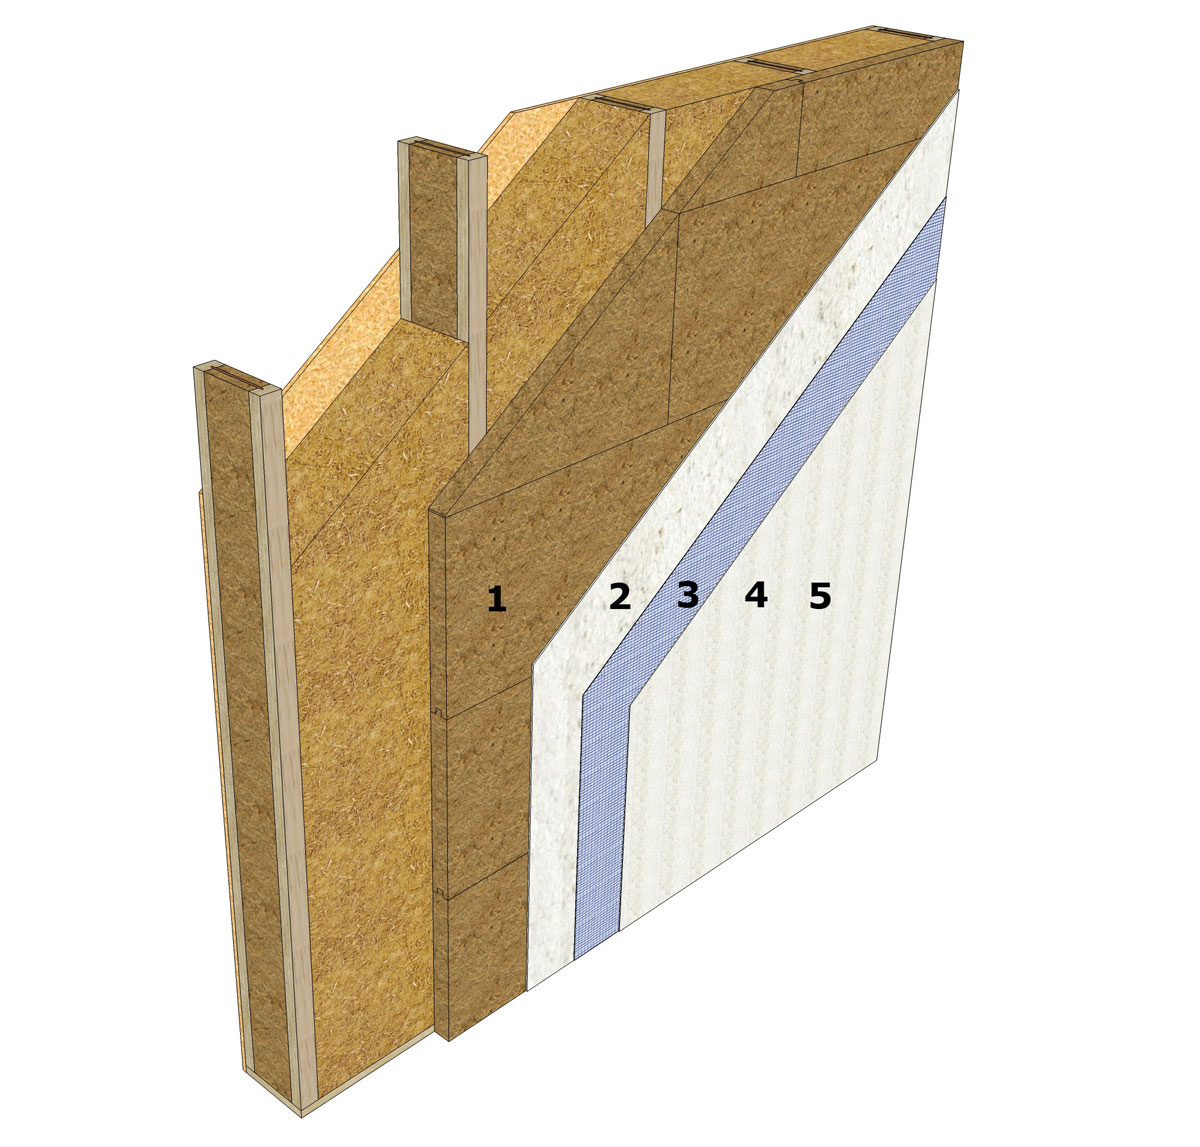 truktúra vrstiev vonkajšej steny drevostavby s nosníkmi Steicowall alebo Steicojoist drevená rámová konštrukcia bez doskového materiálu z exteriéru